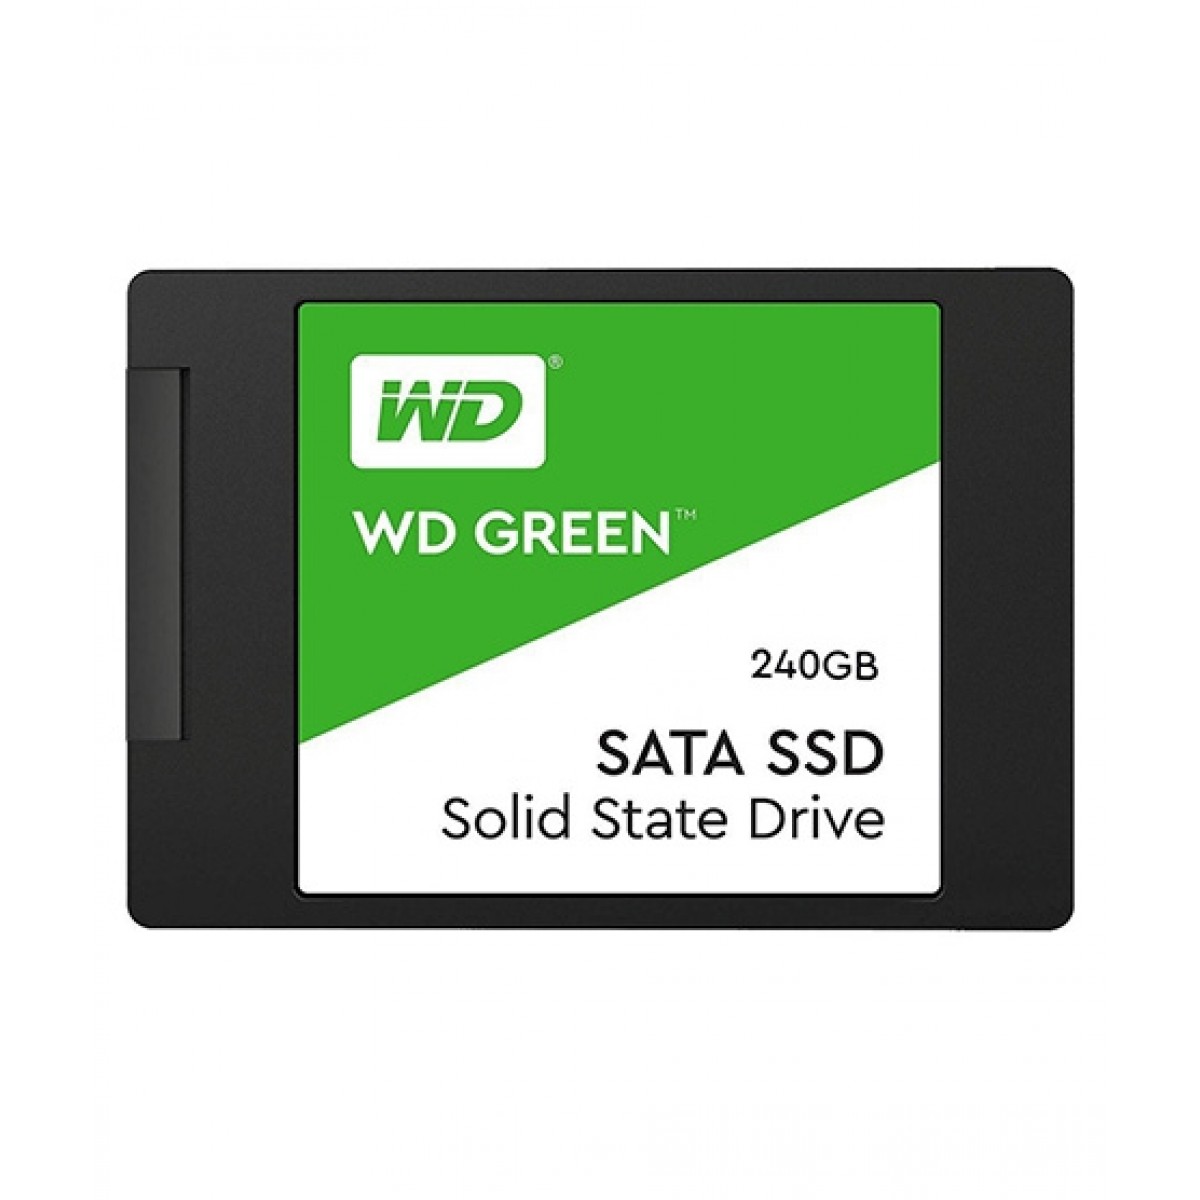 WD Green 240GB SATA PC SSD Internal Hard Drive